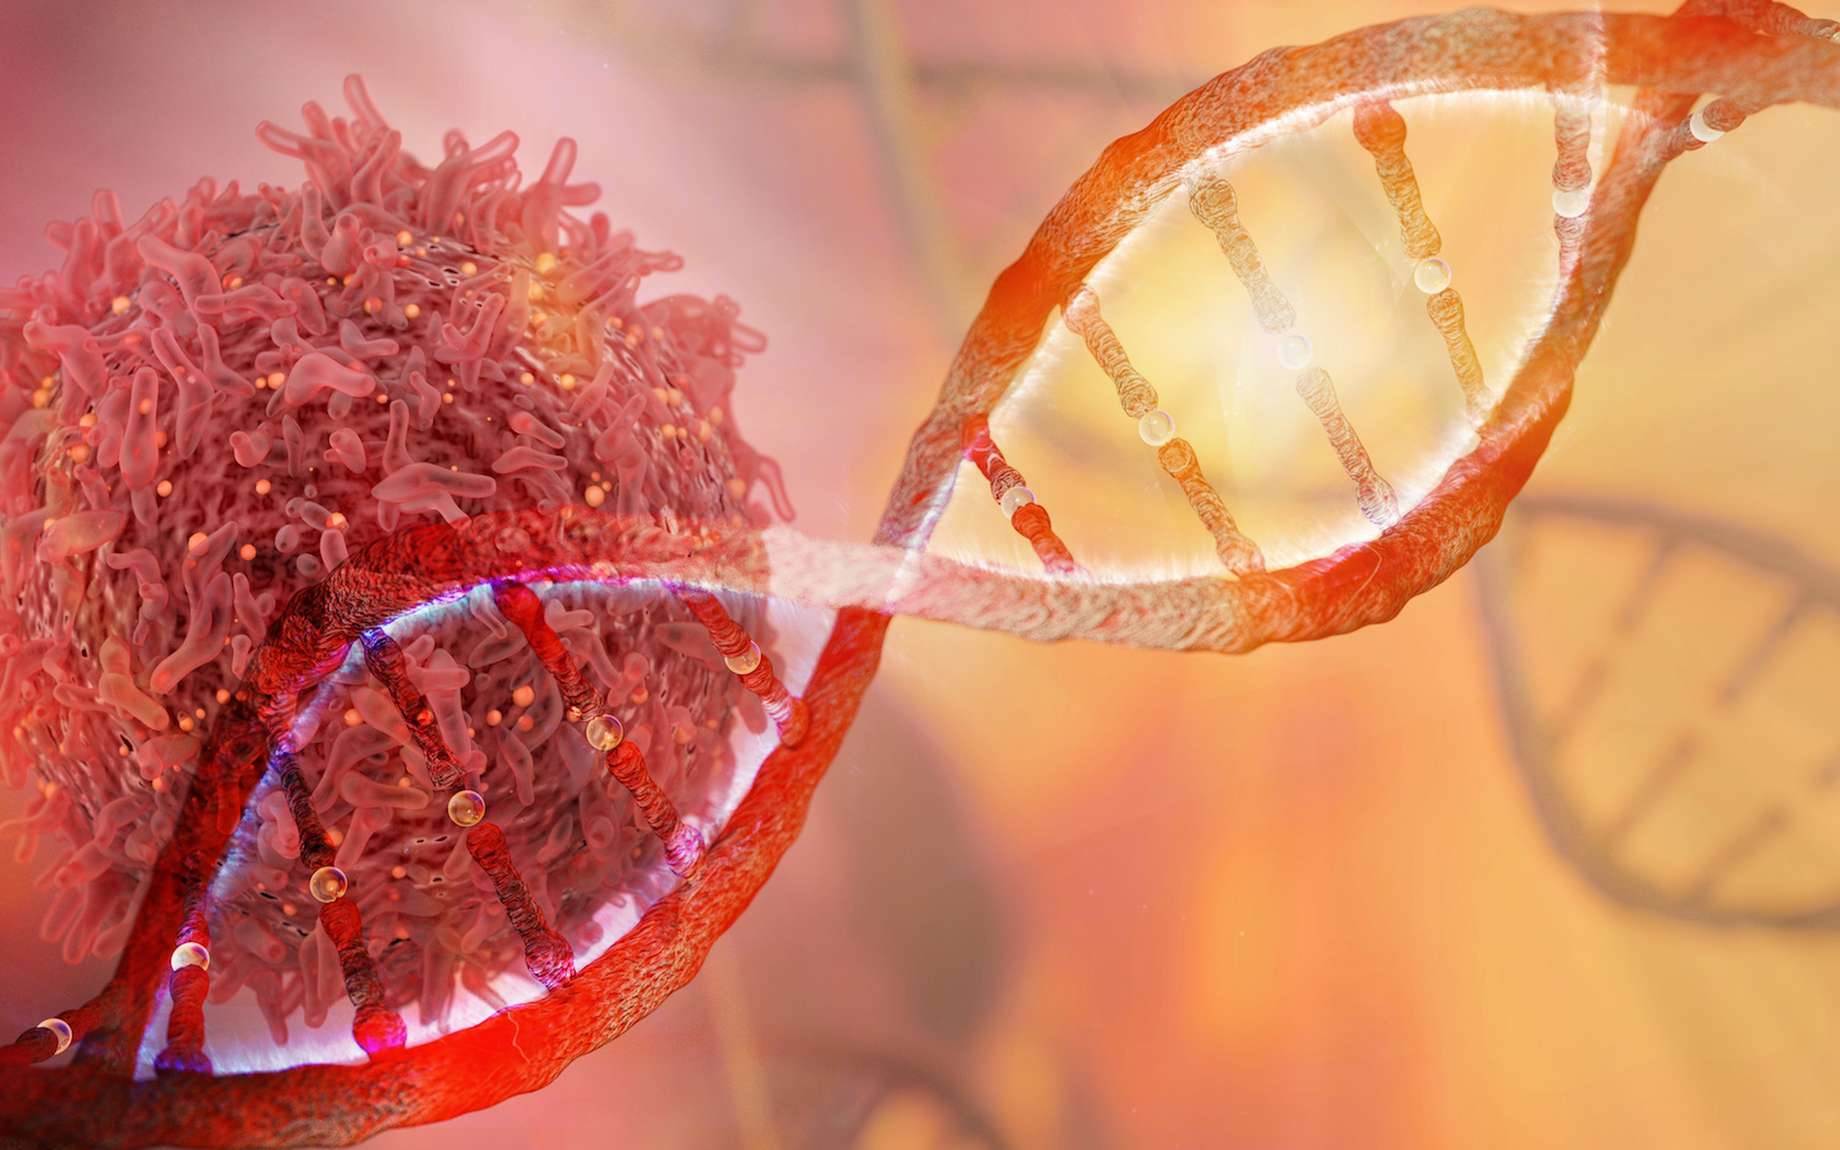 Avancée majeure : les tumeurs ne seraient pas forcément induites par des mutations génétiques